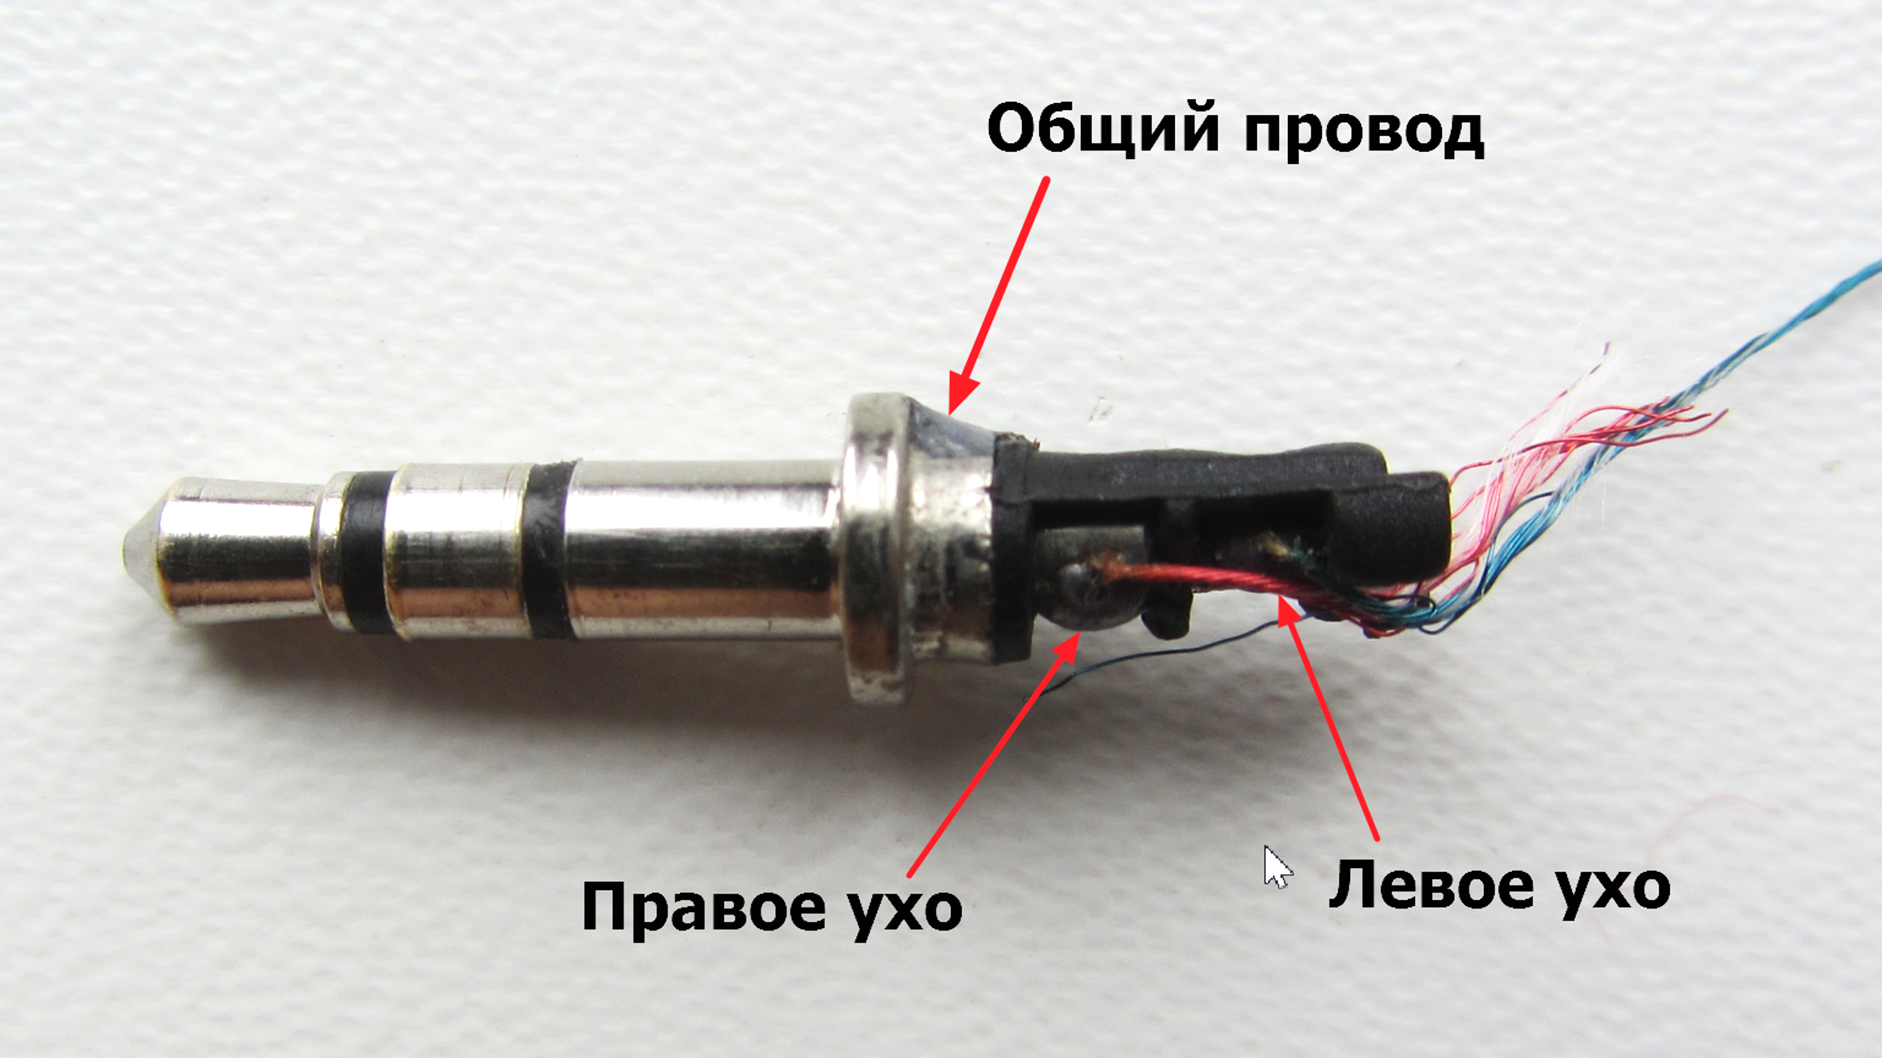 На рисунке показана схема устройства телефонного наушника через катушку электромагнита а пропускает